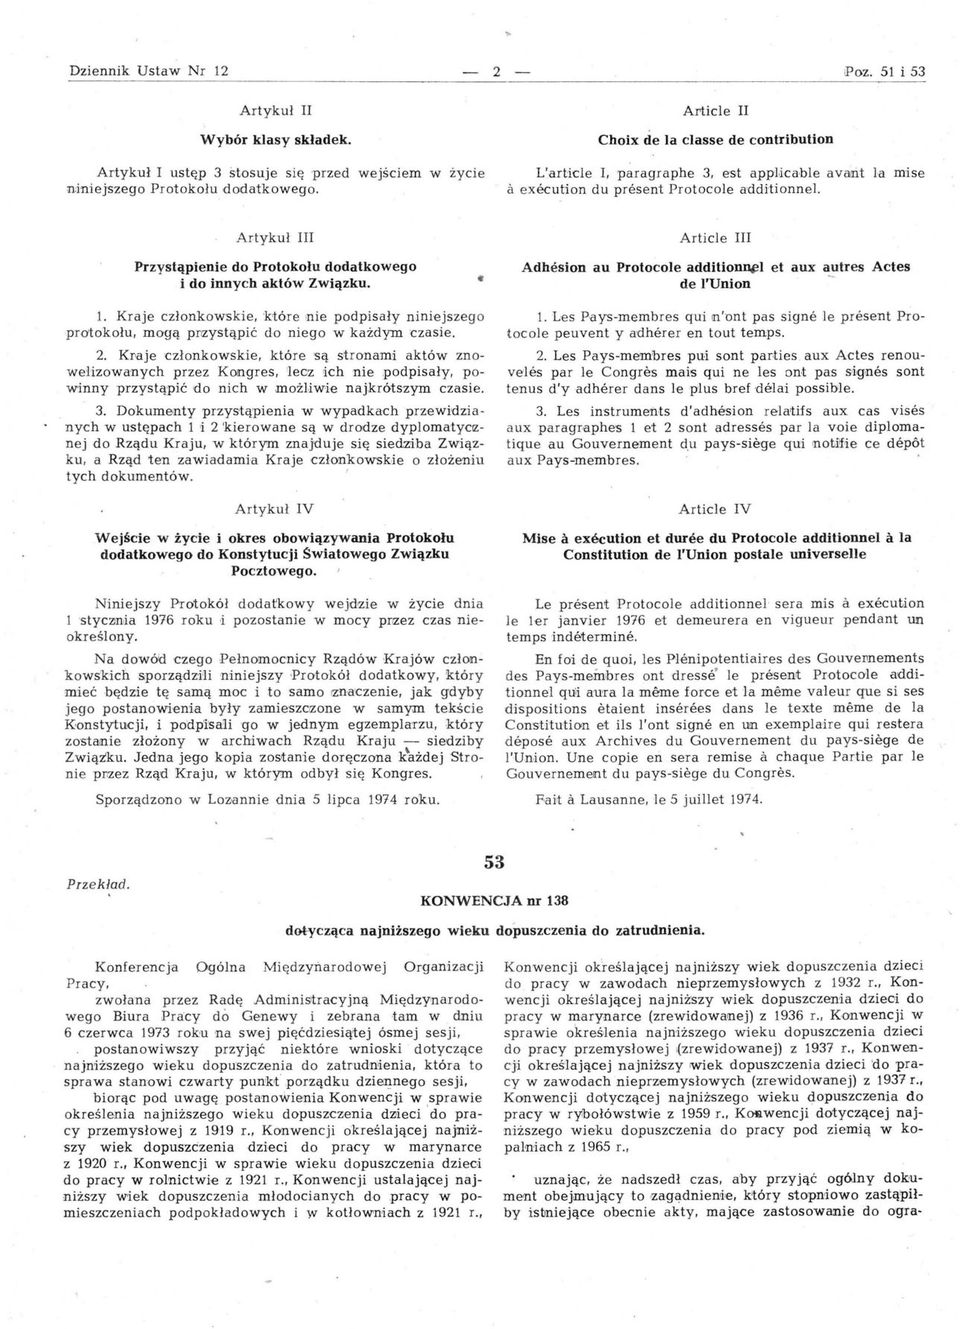 Artykuł III Article III Przystąpienie do Protokołu dodatkowego i do innych aktów Związku. Adhesion au Protocole additionnel et aux autres Actes de I'Union 1.